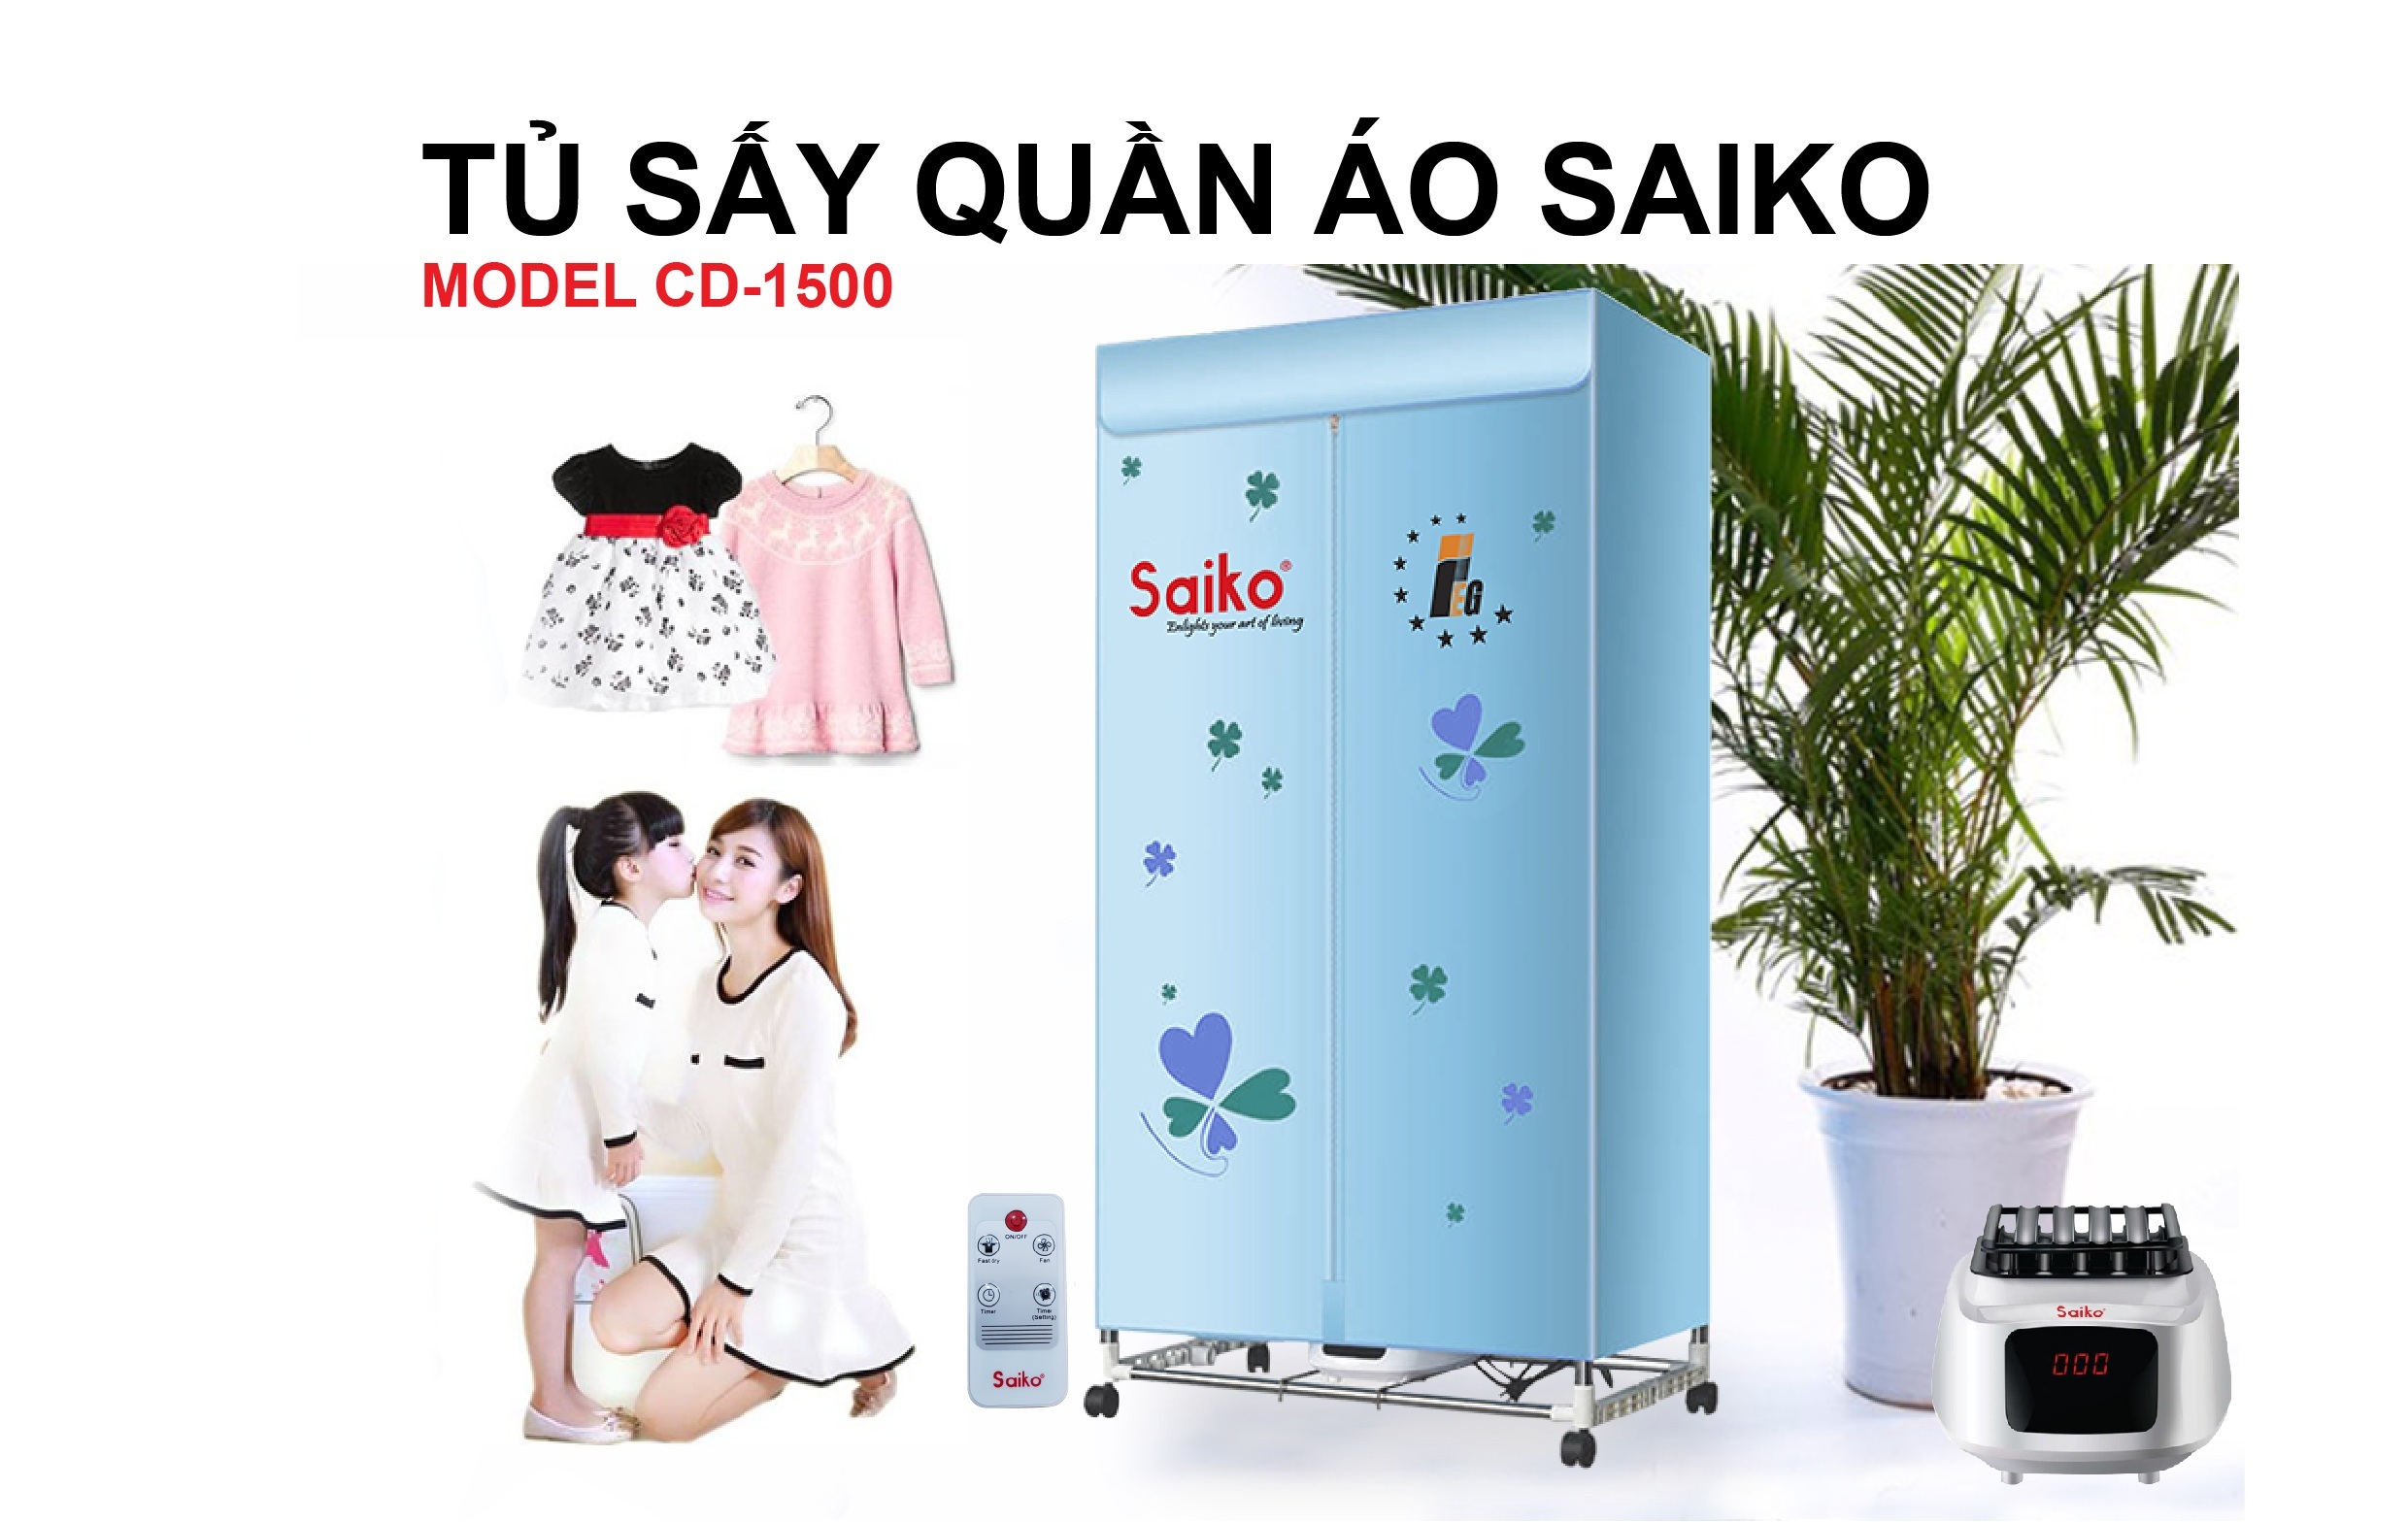 Máy sấy quần áo Saiko có tốt không, giá bao nhiêu, cách lắp sử dụng